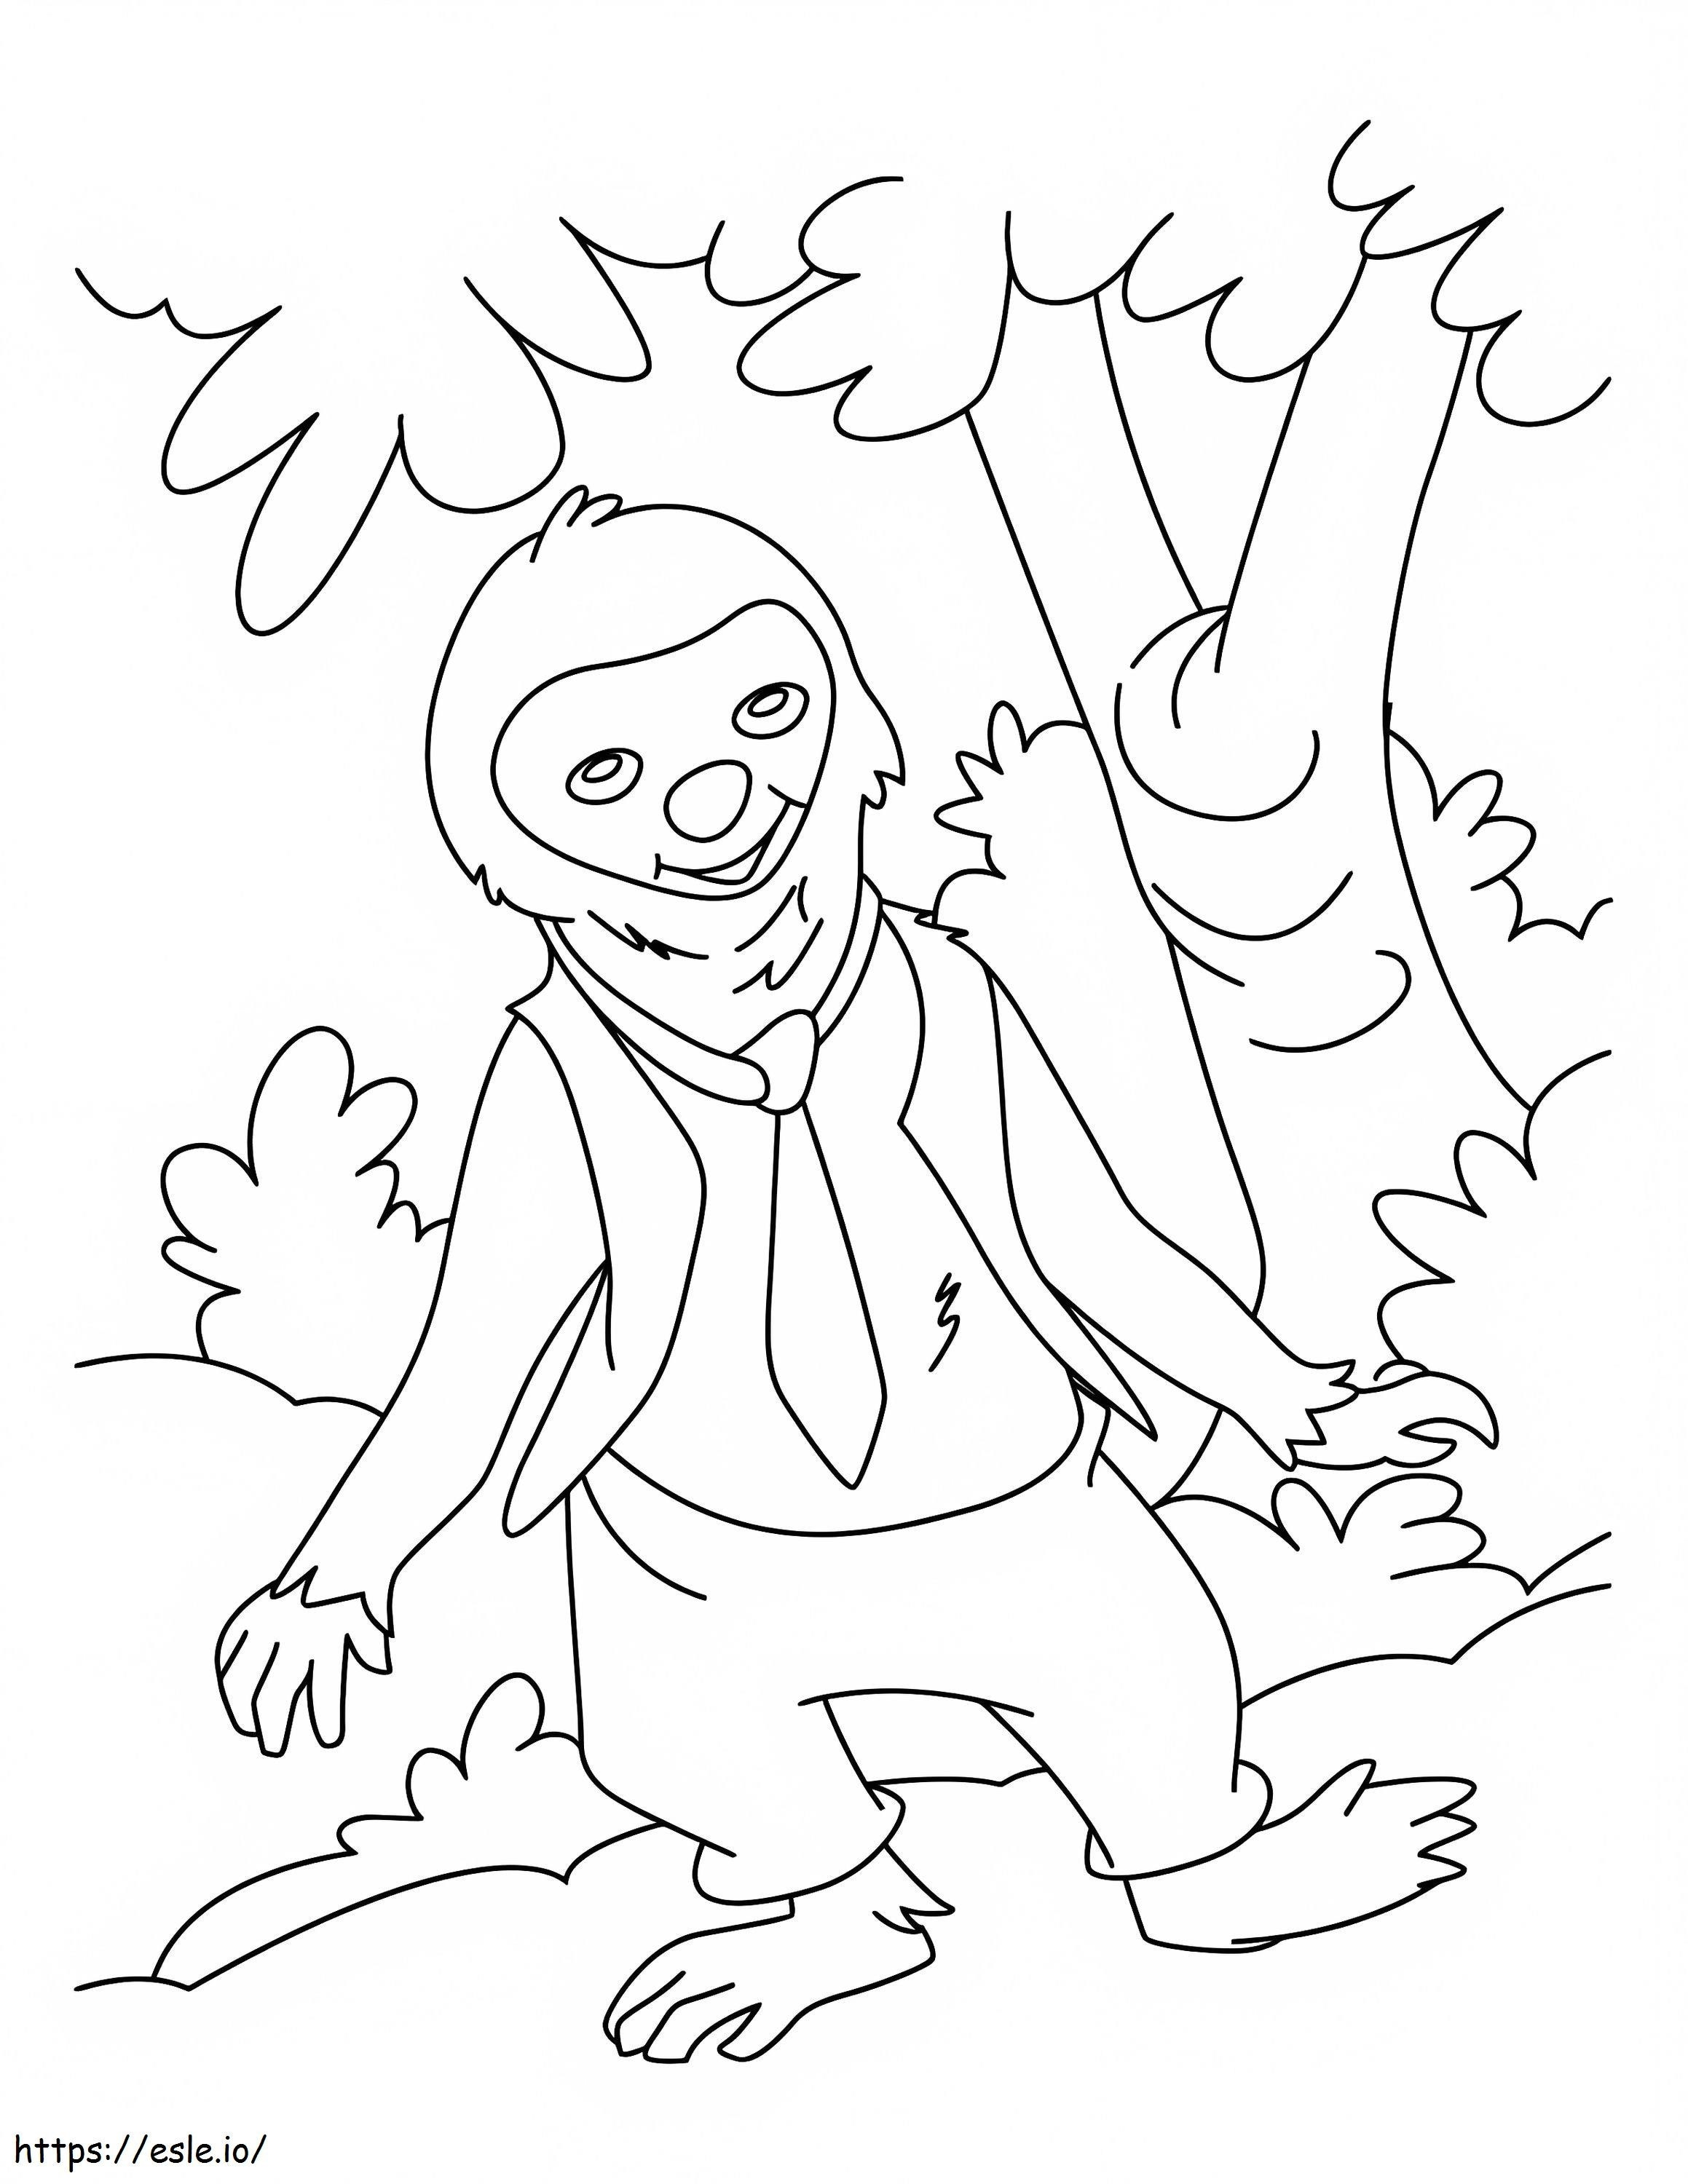 Cartoon Sloth coloring page